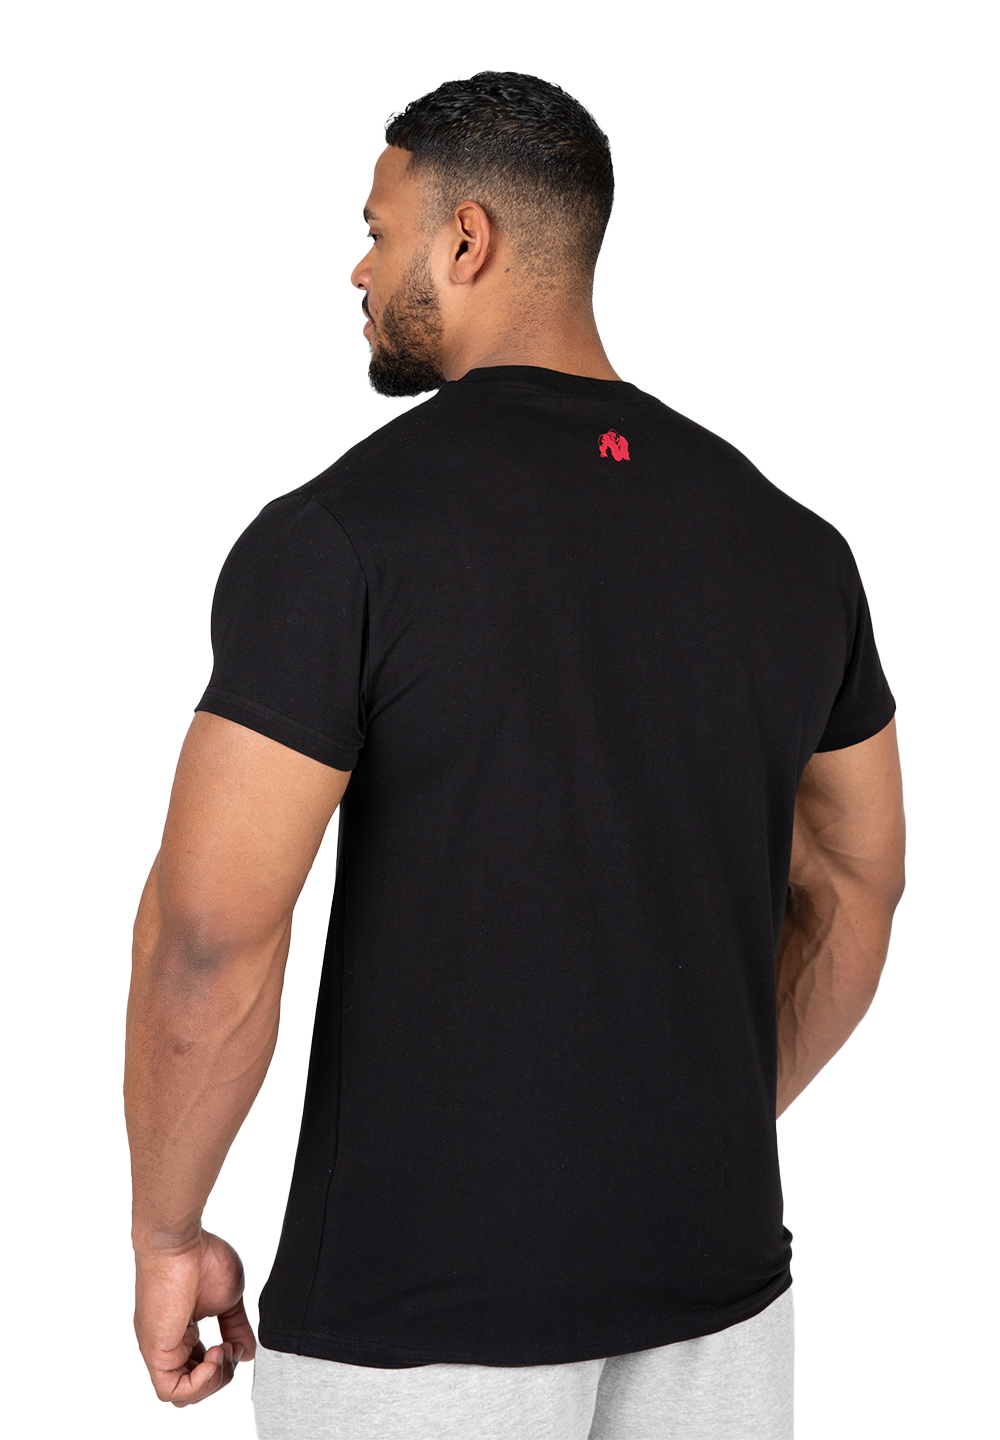 Футболка Murray T-Shirt - Black от Gorilla Wear